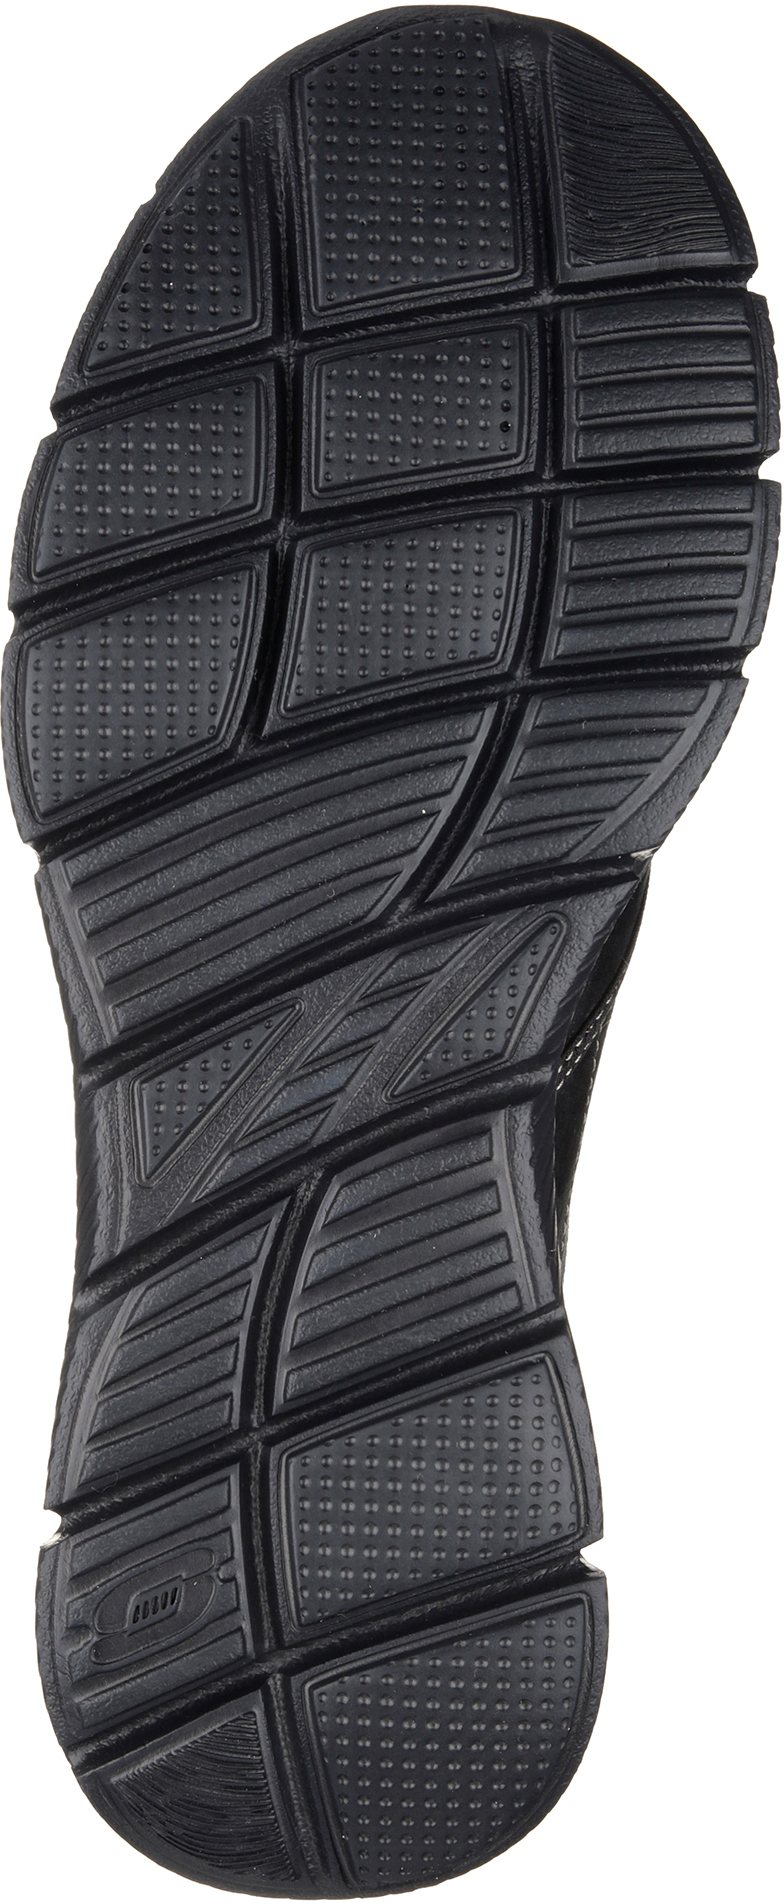 Skechers Equalizer - Mind Game Black 51502 BBK - Casual Shoes ...